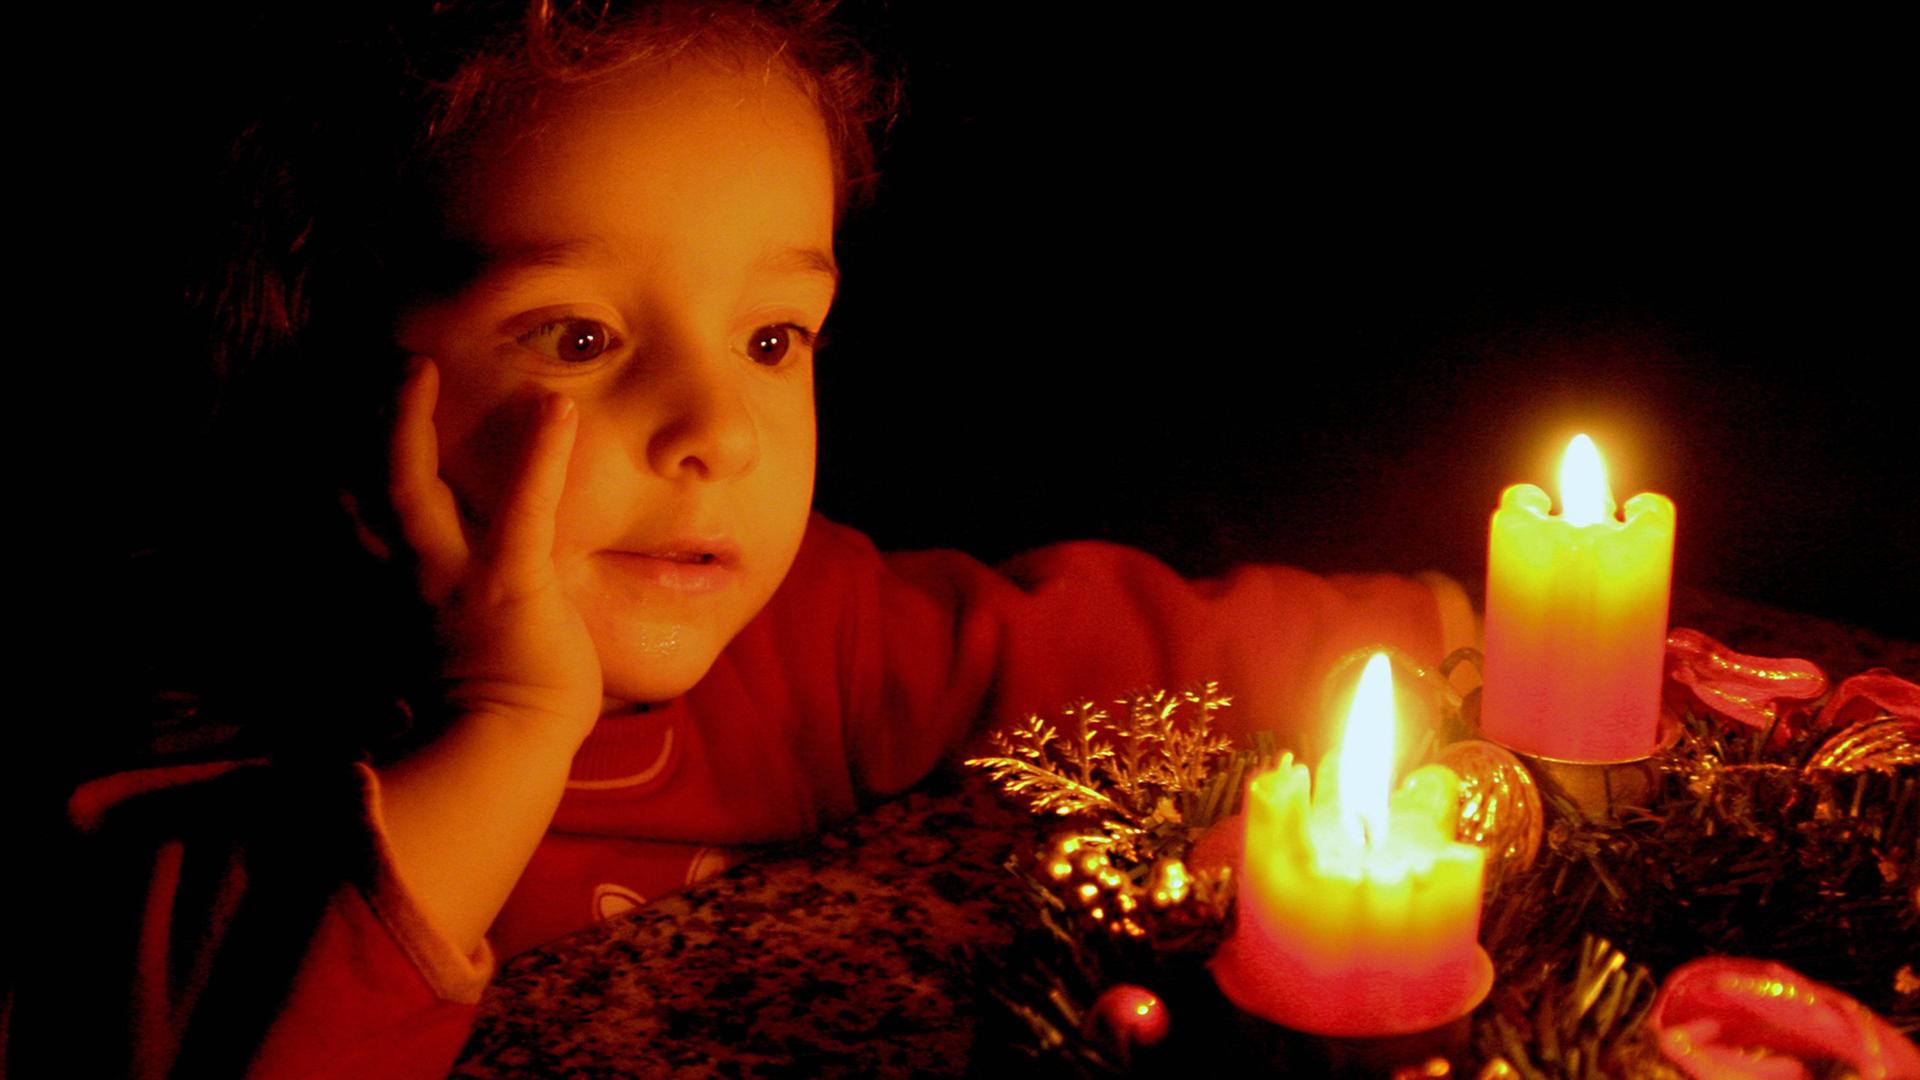 Ein Kind betrachtet brennende Kerzen auf einem Adventskranz.